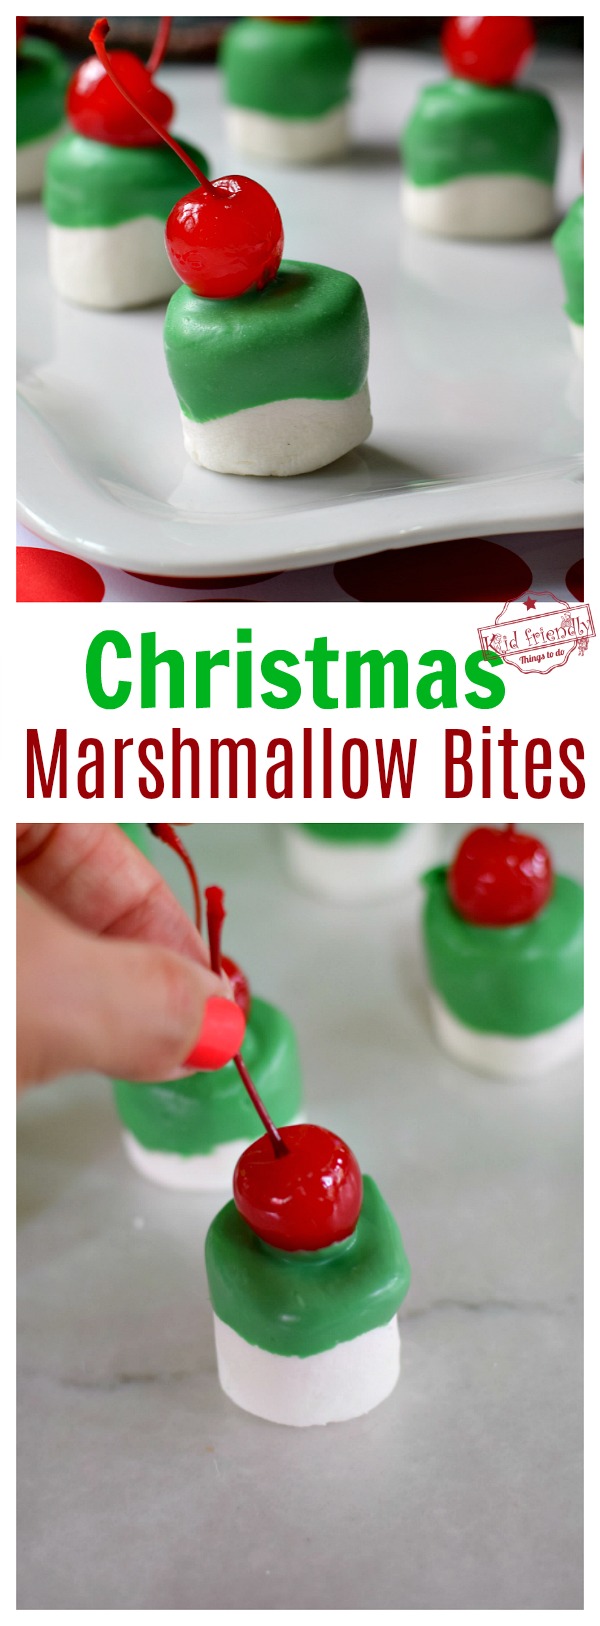 DIY holiday treats marshmallow bites